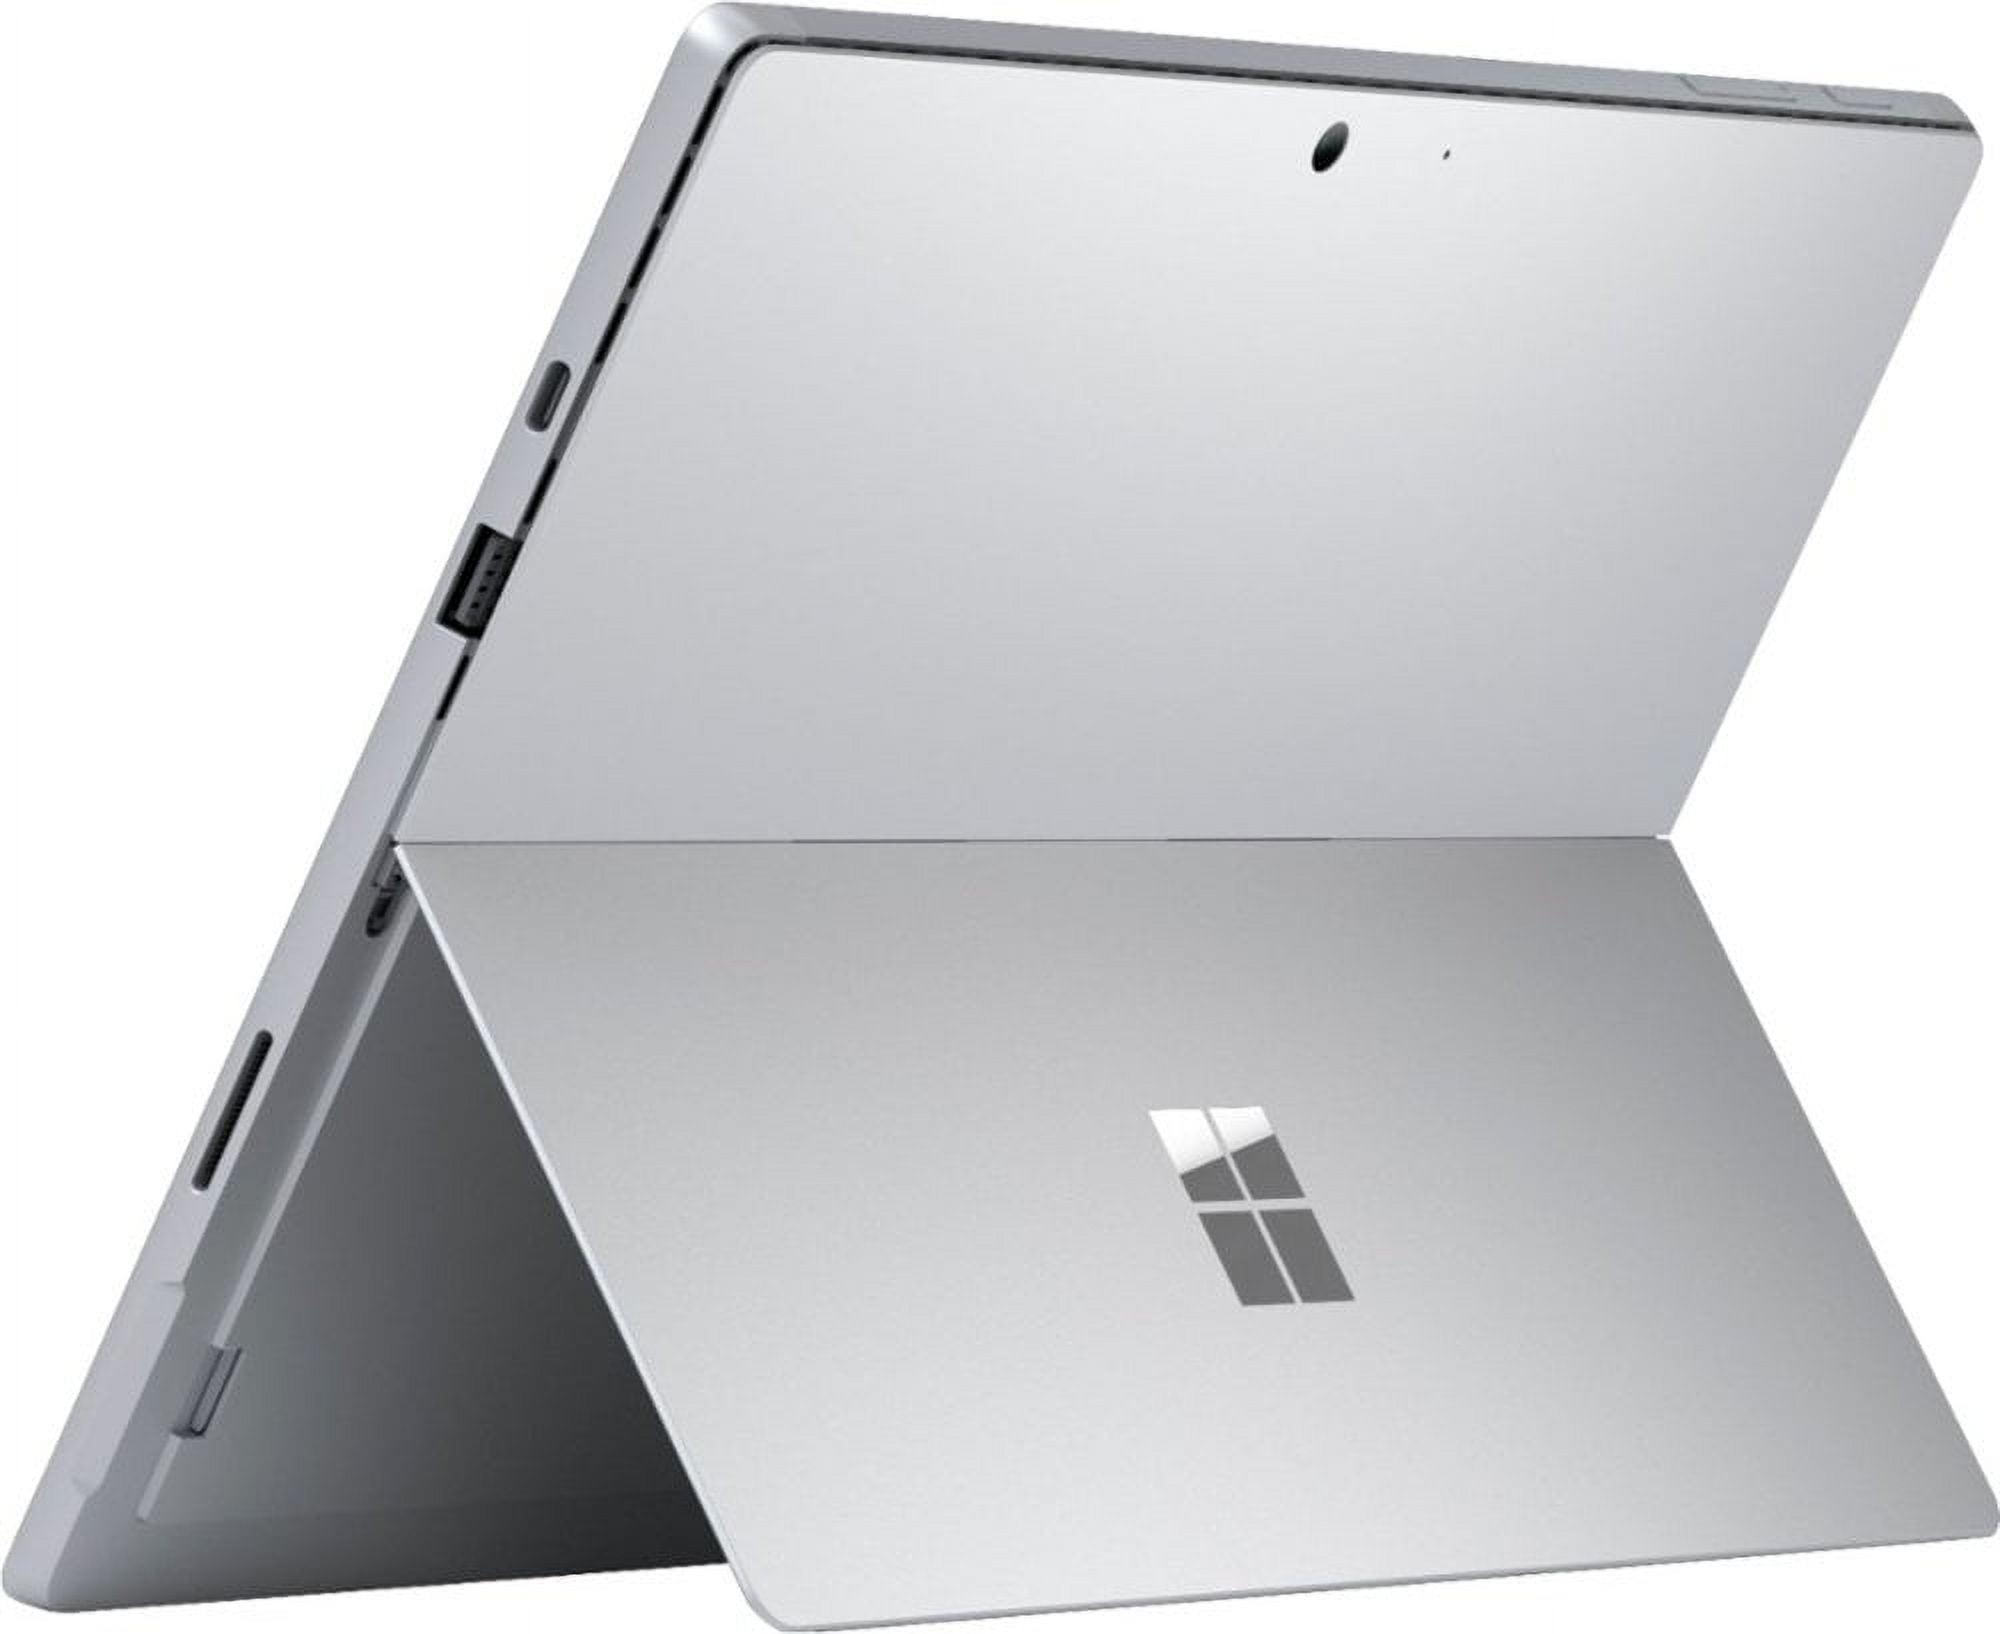 Microsoft Surface Pro 7, 12.3